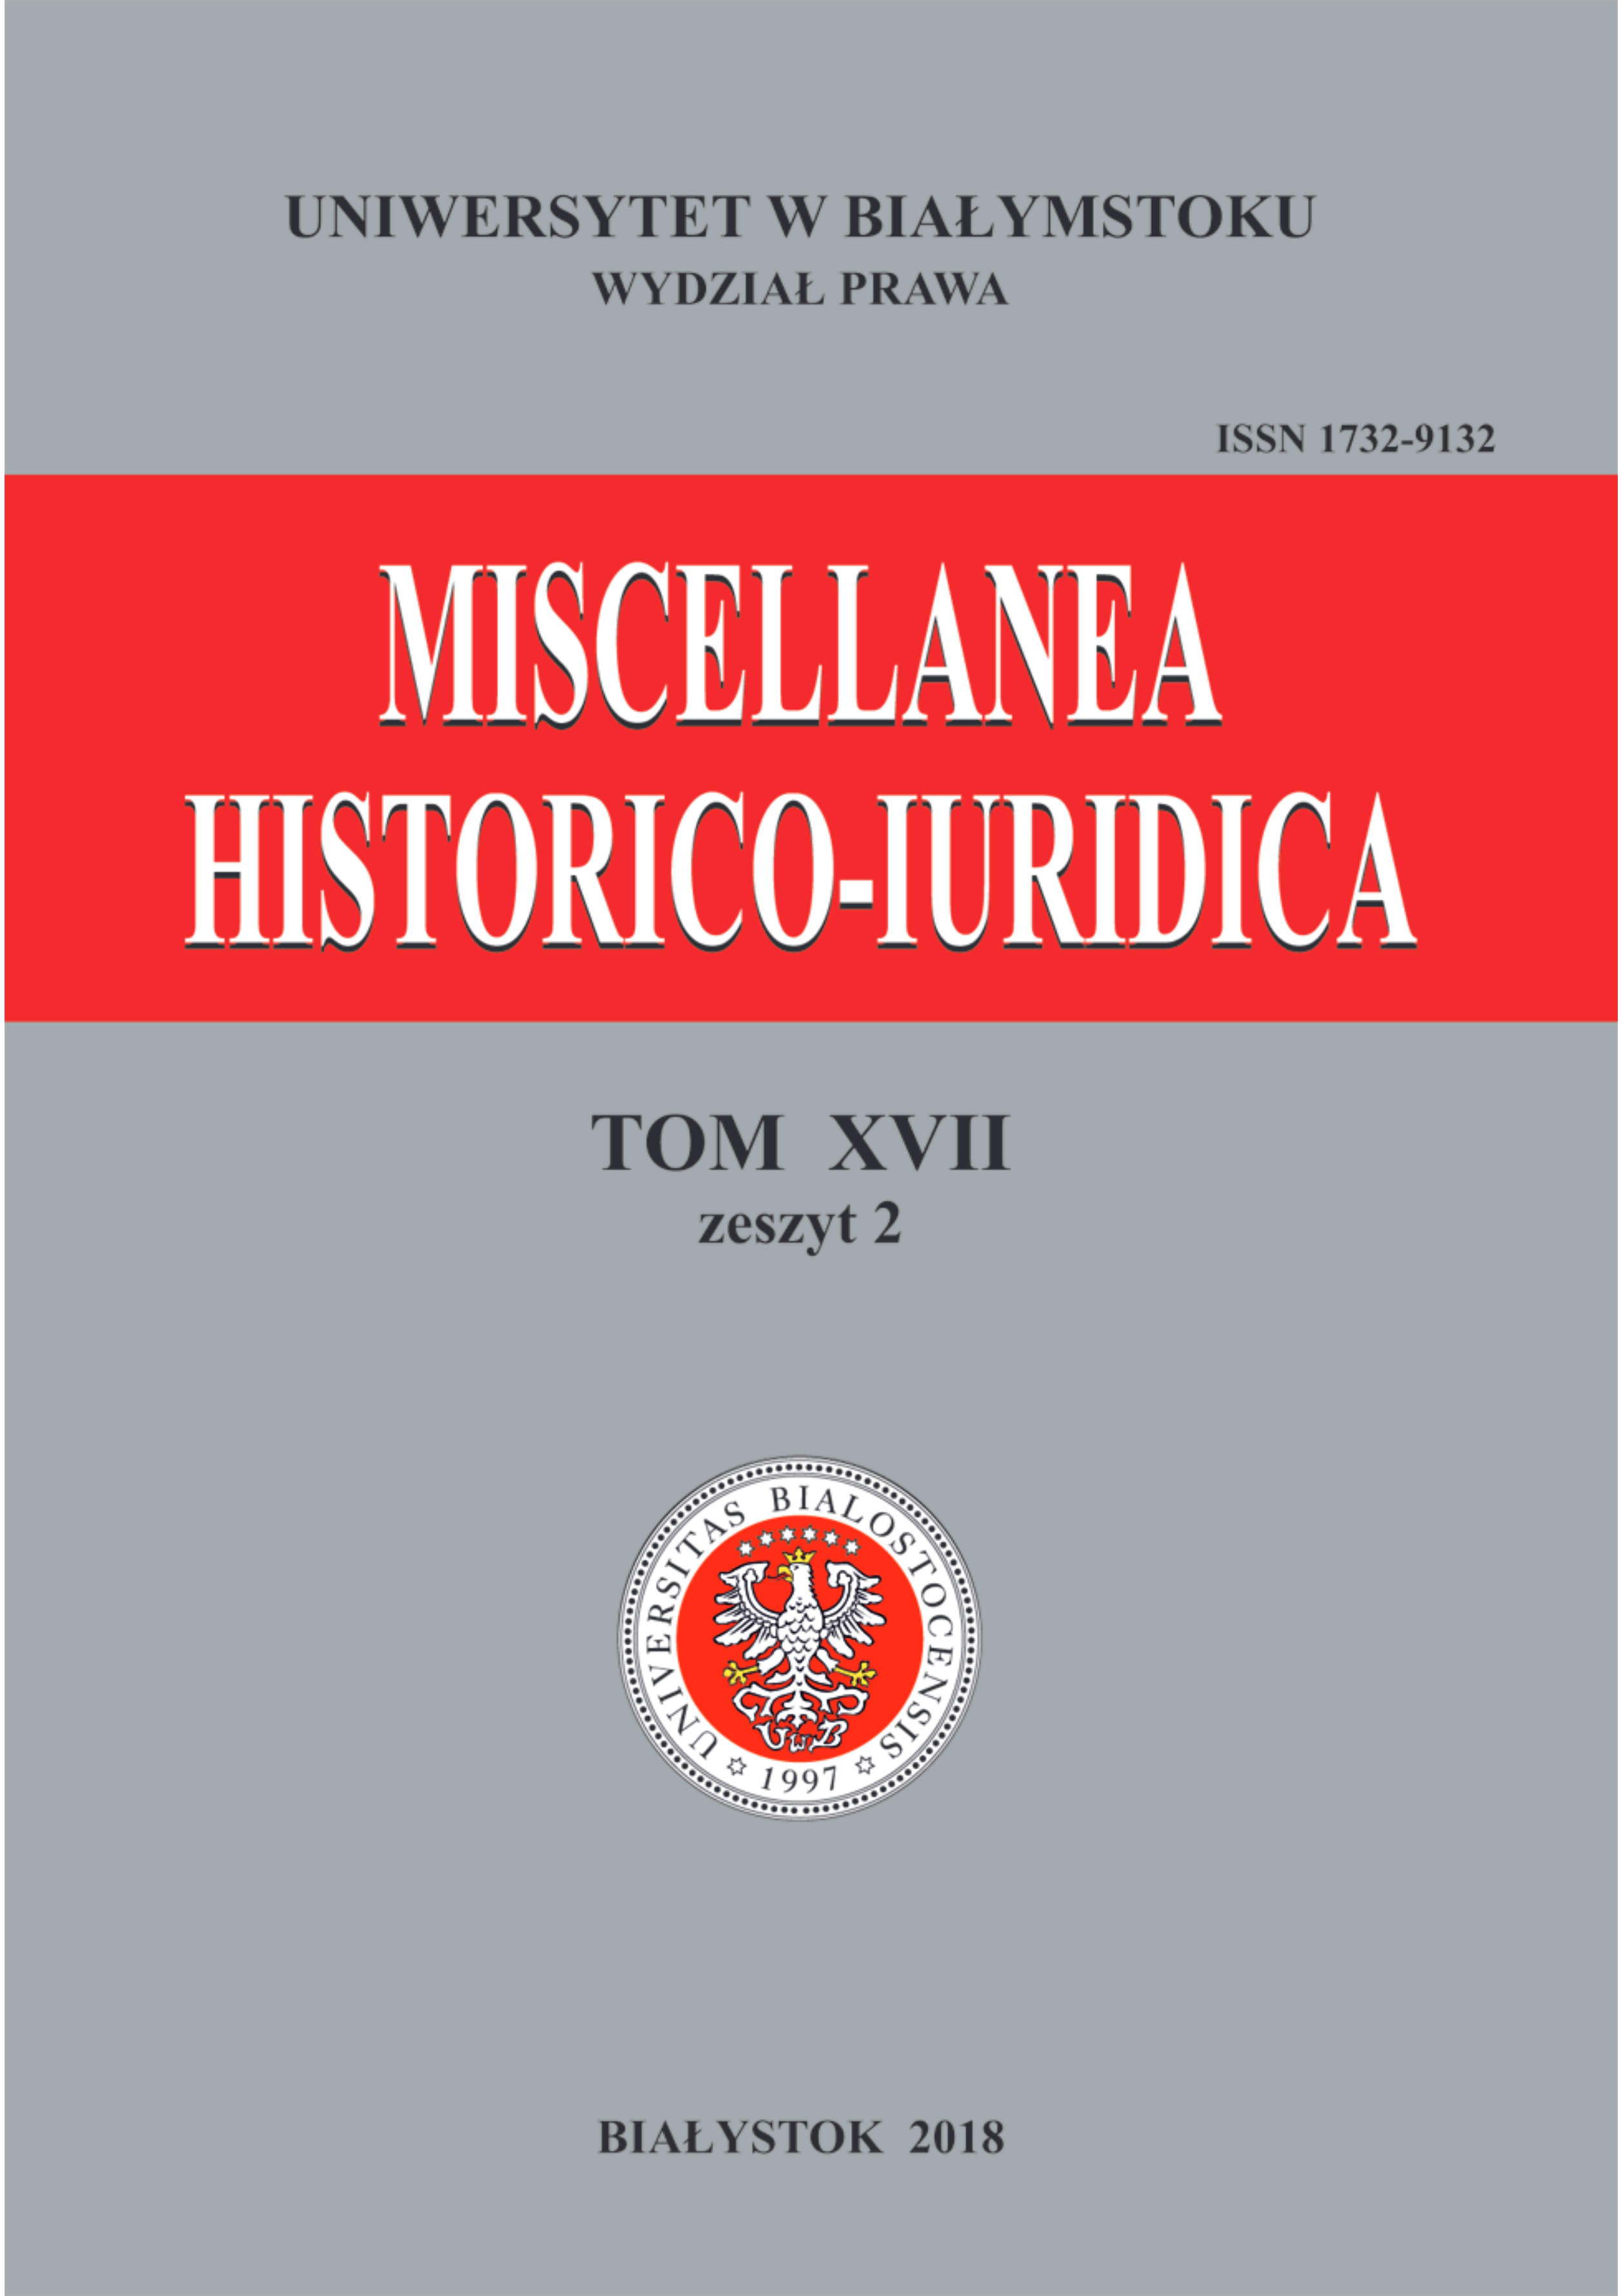 					View Vol. 17 No. 2 (2018): Miscellanea Historico-Iuridica Vol. XVII No. 2
				